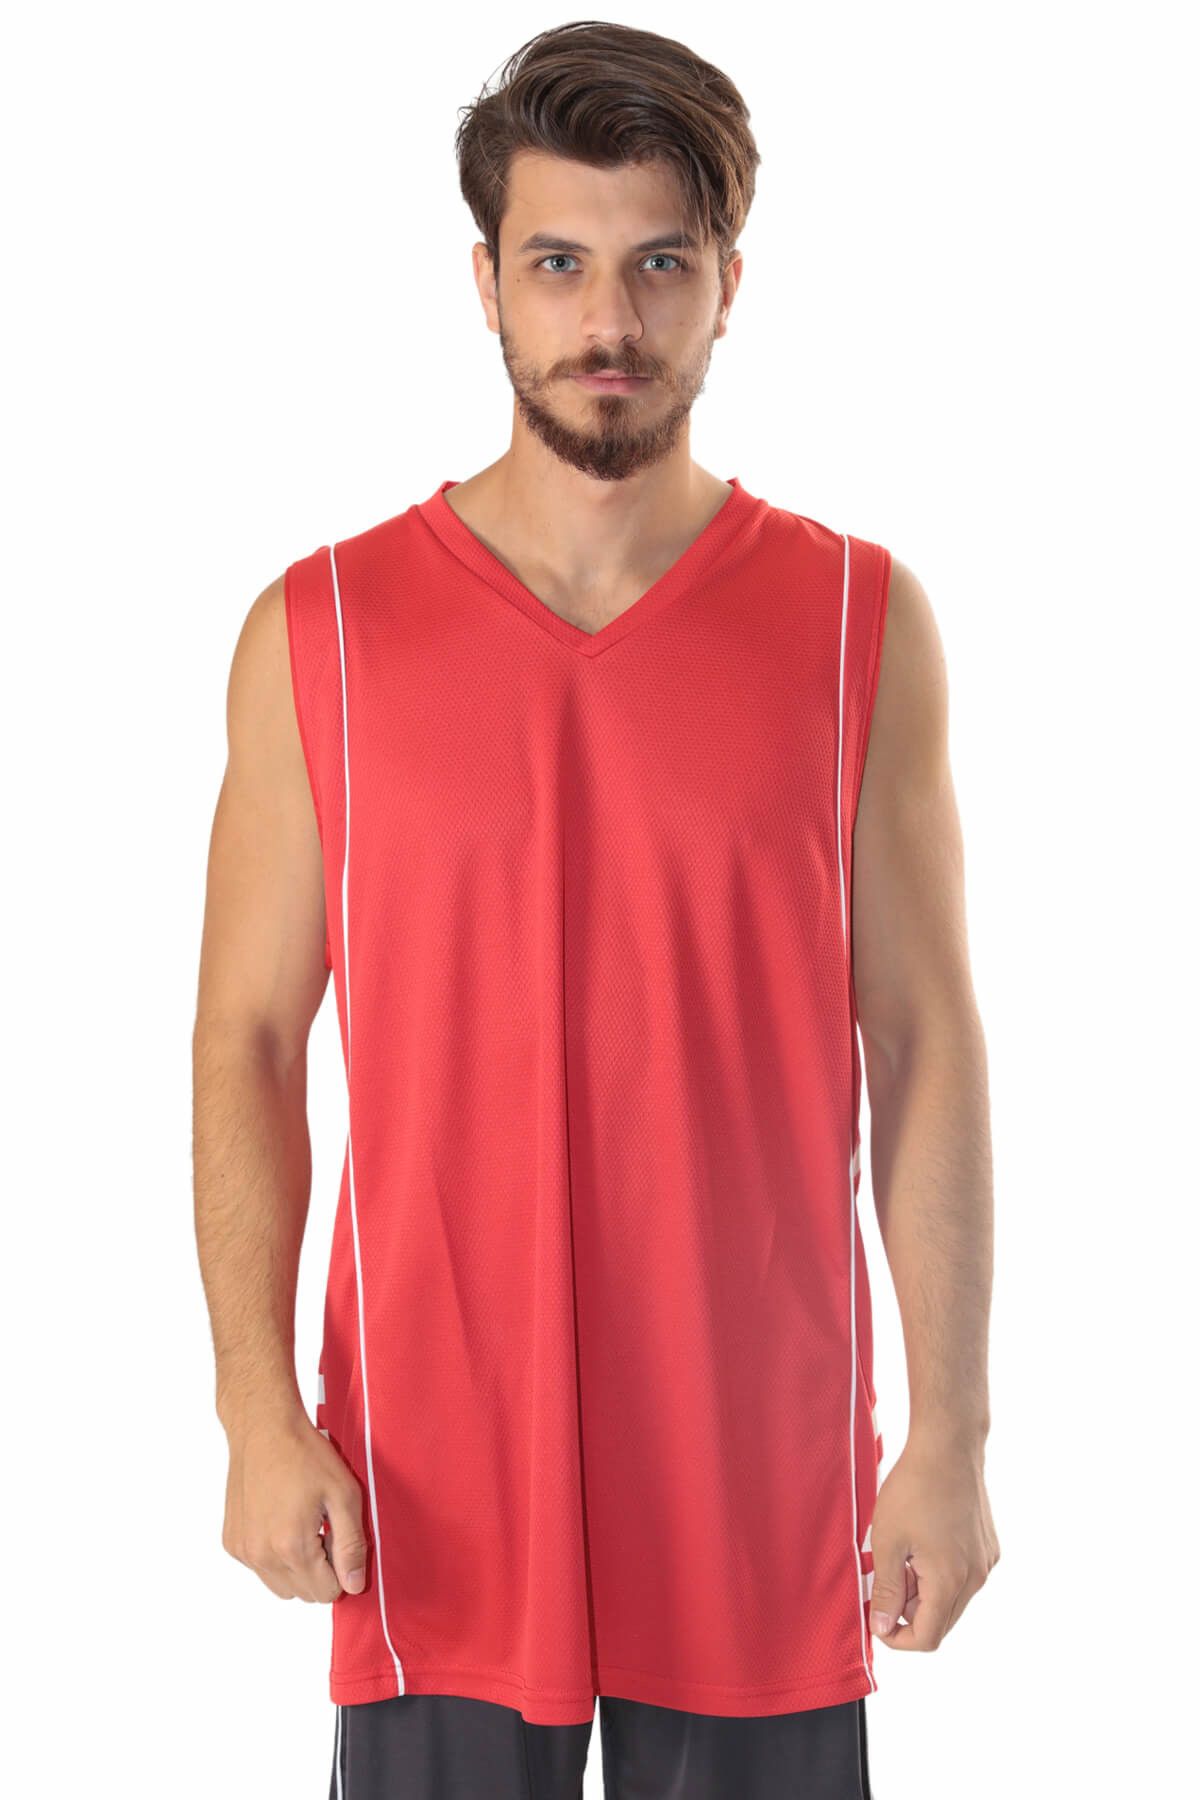 Sportive Erkek Forma -  Gator Erkek V Yaka Kırmızı Basketbol Forması  - 500041-0KB